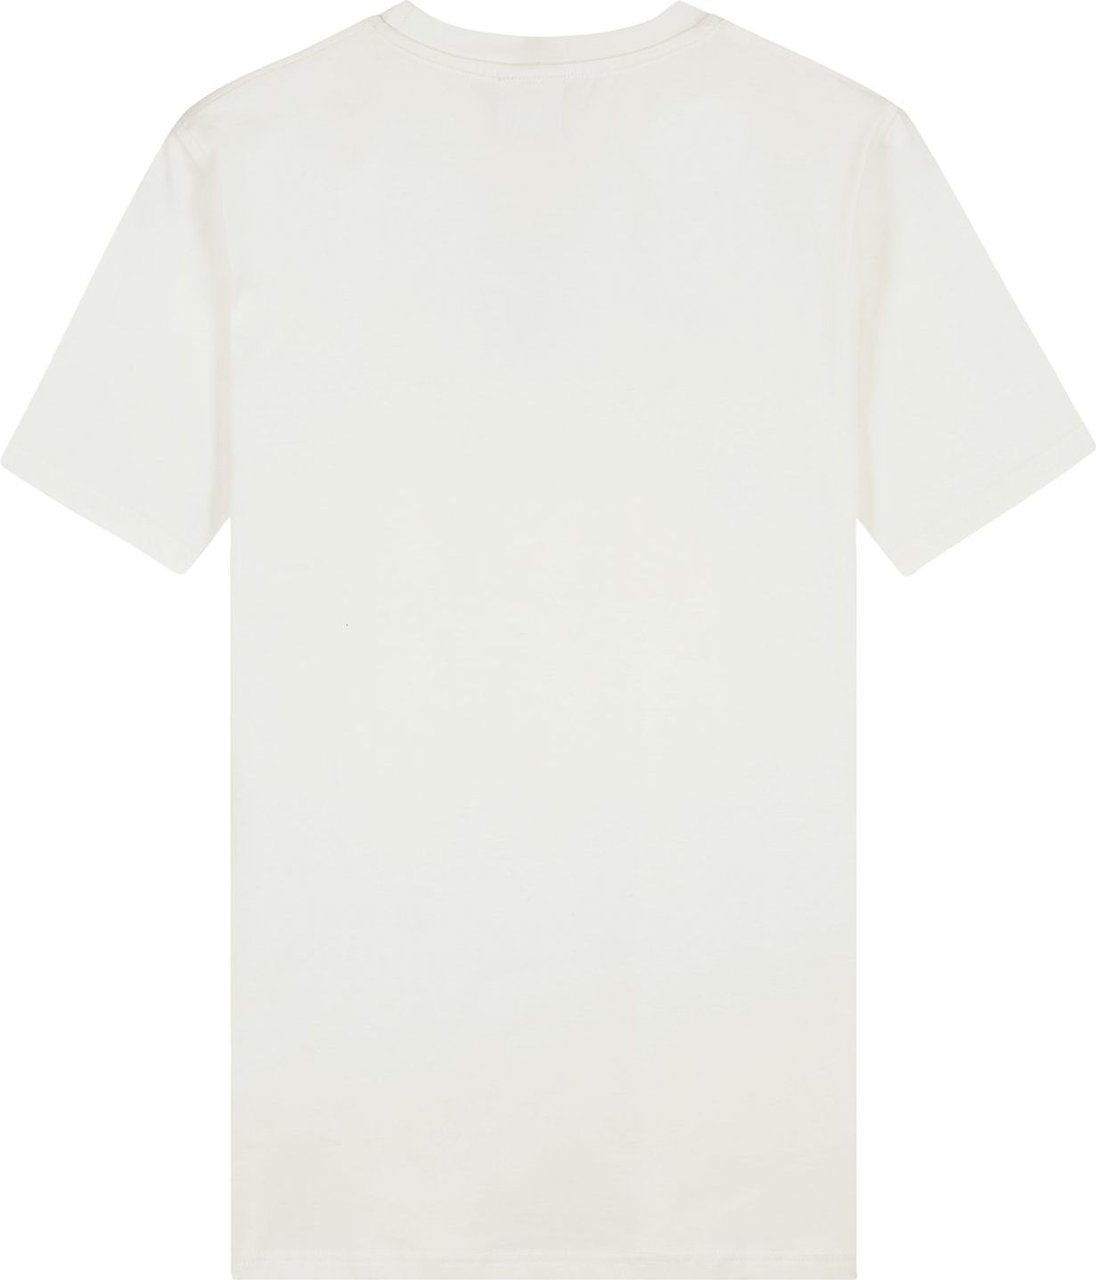 Malelions Women Amy T-Shirt - Off-White Wit